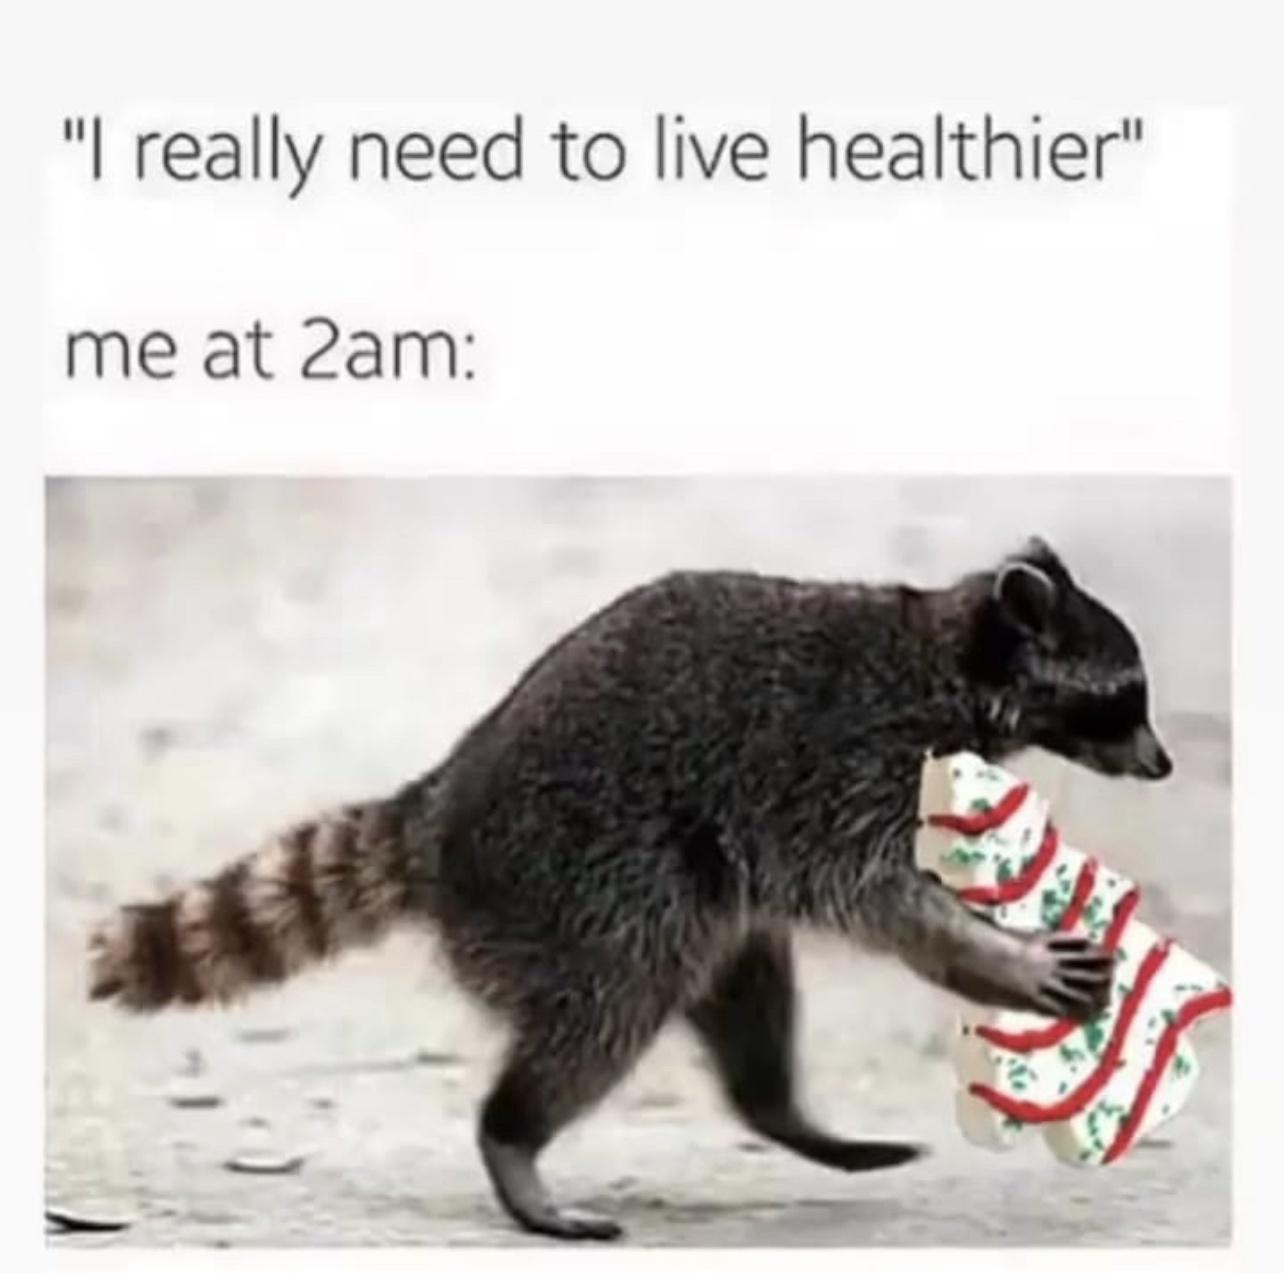 really need to live healthier meme - "I really need to live healthier" me at 2am